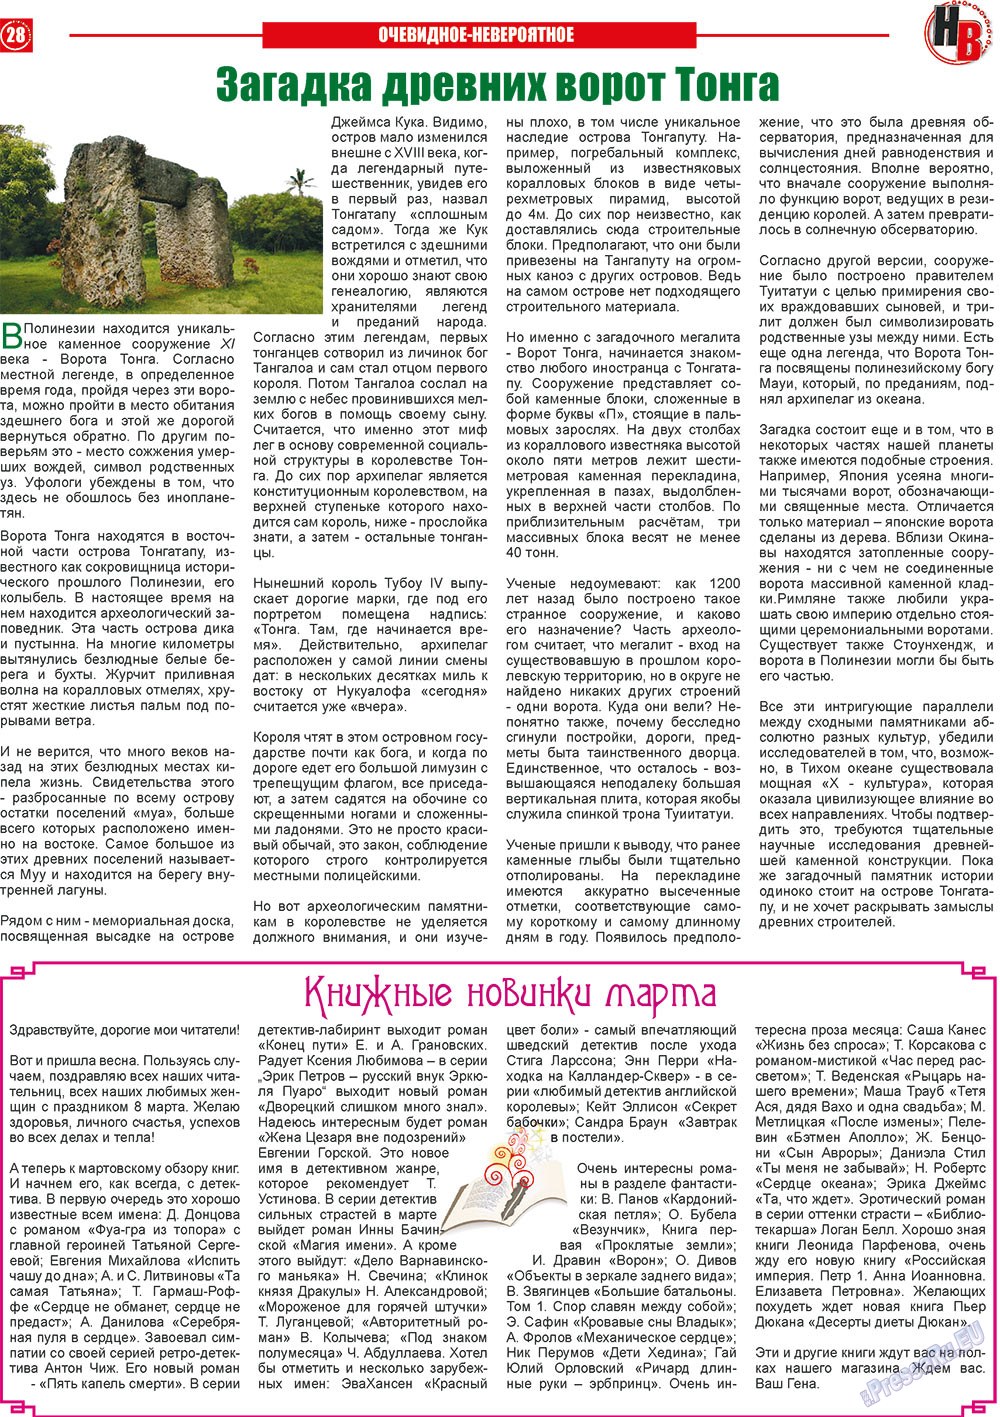 Наше время, газета. 2013 №3 стр.28